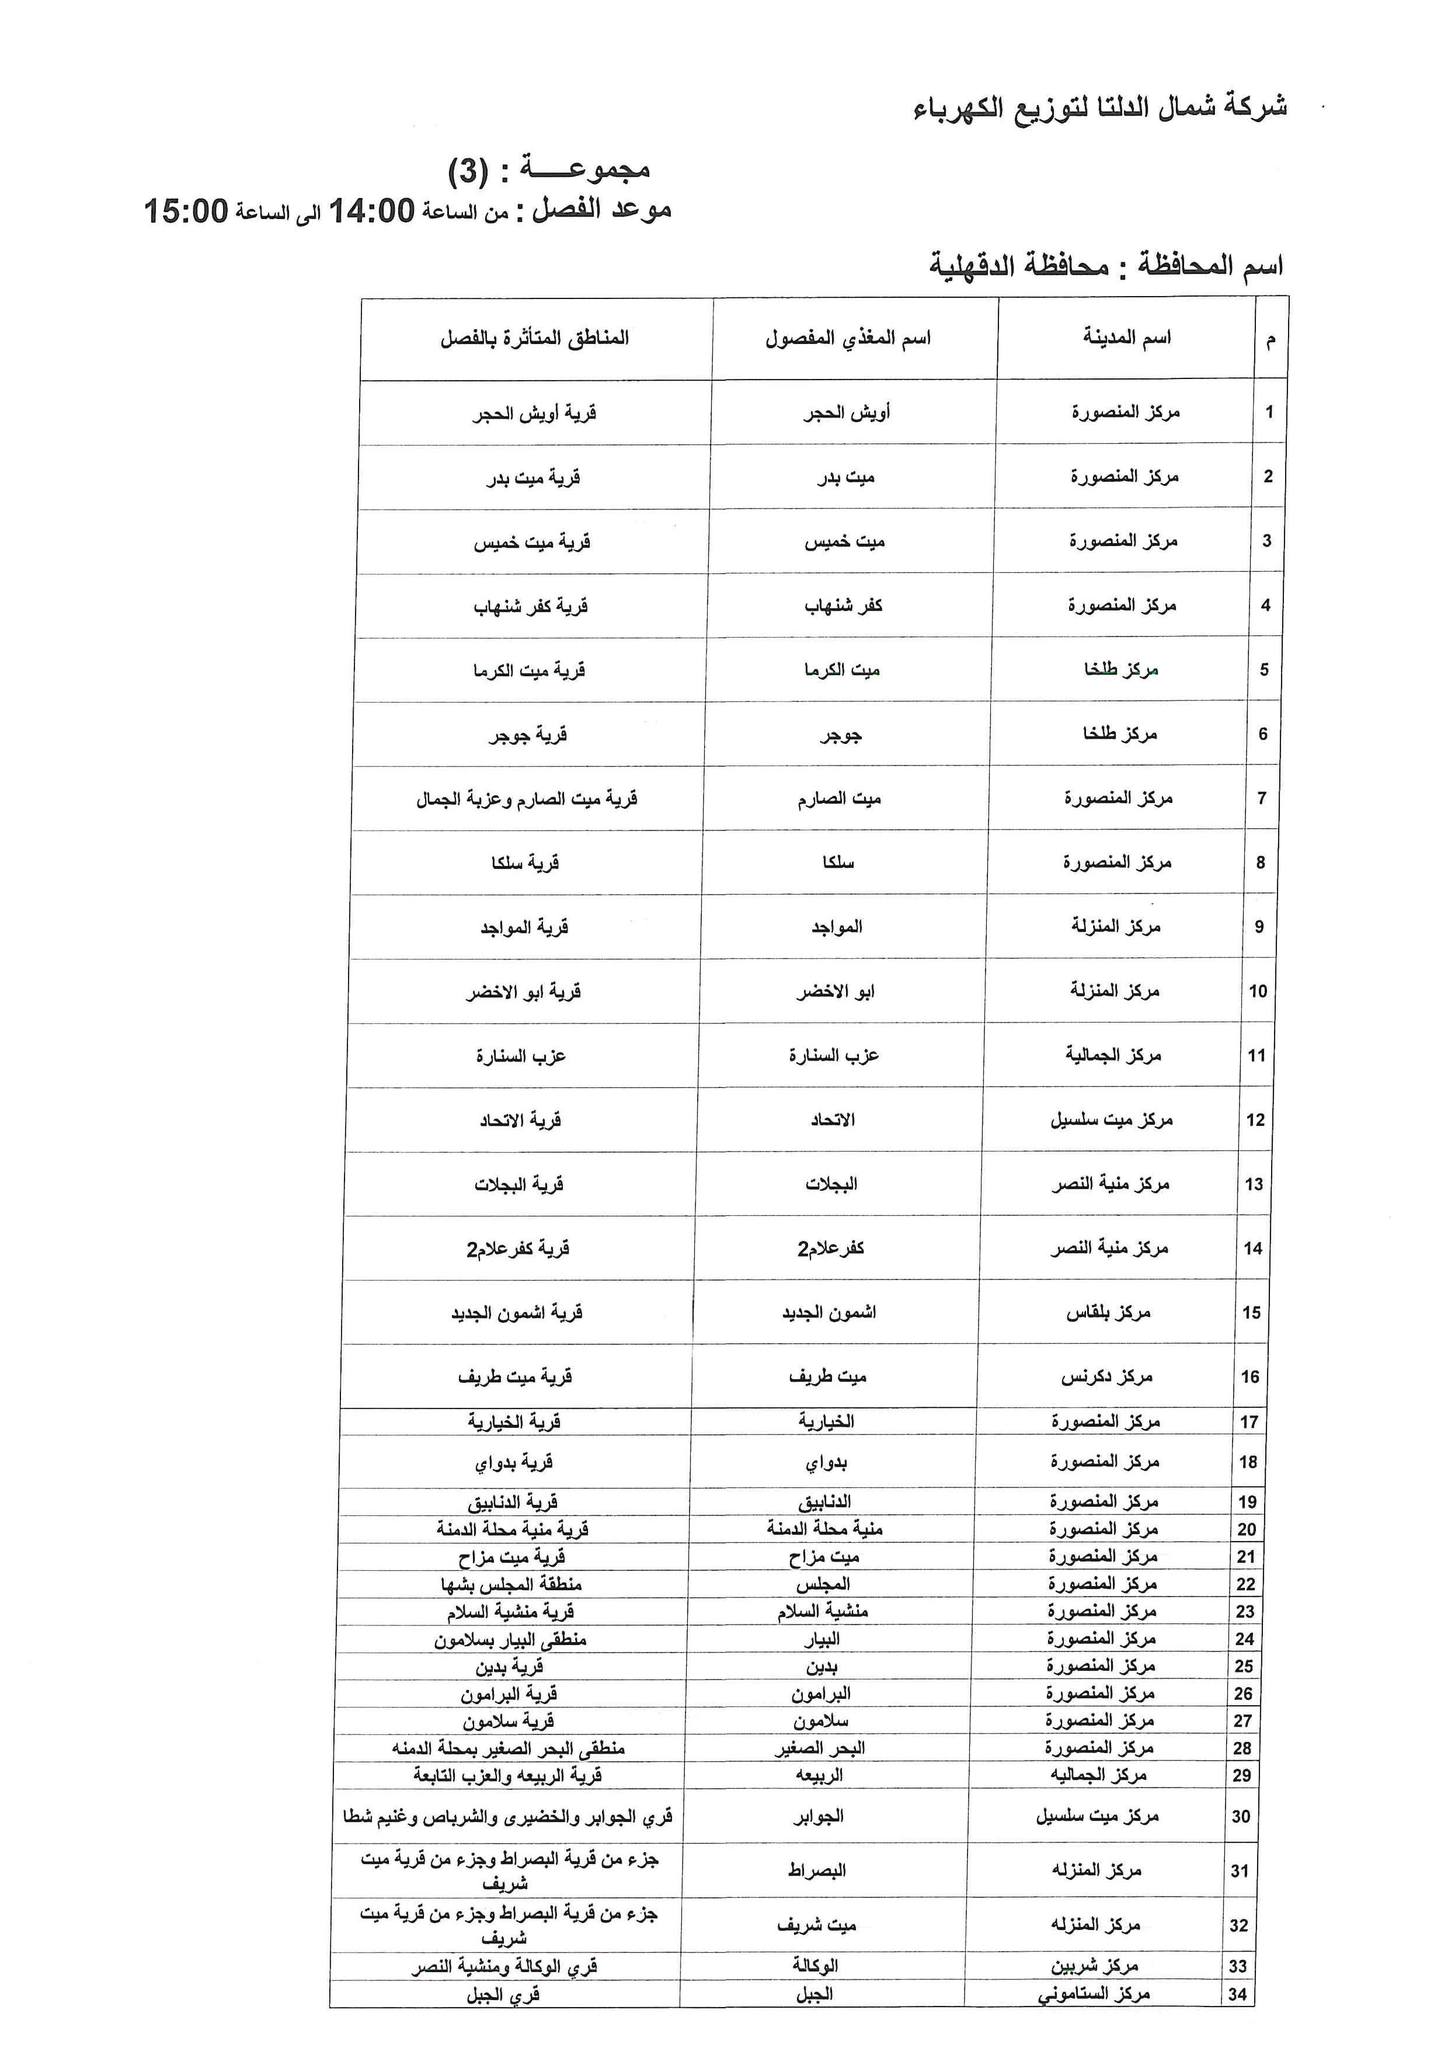 الإعلان عن خطة تخفيف أحمال الكهرباء فى محافظة الدقهلية 5